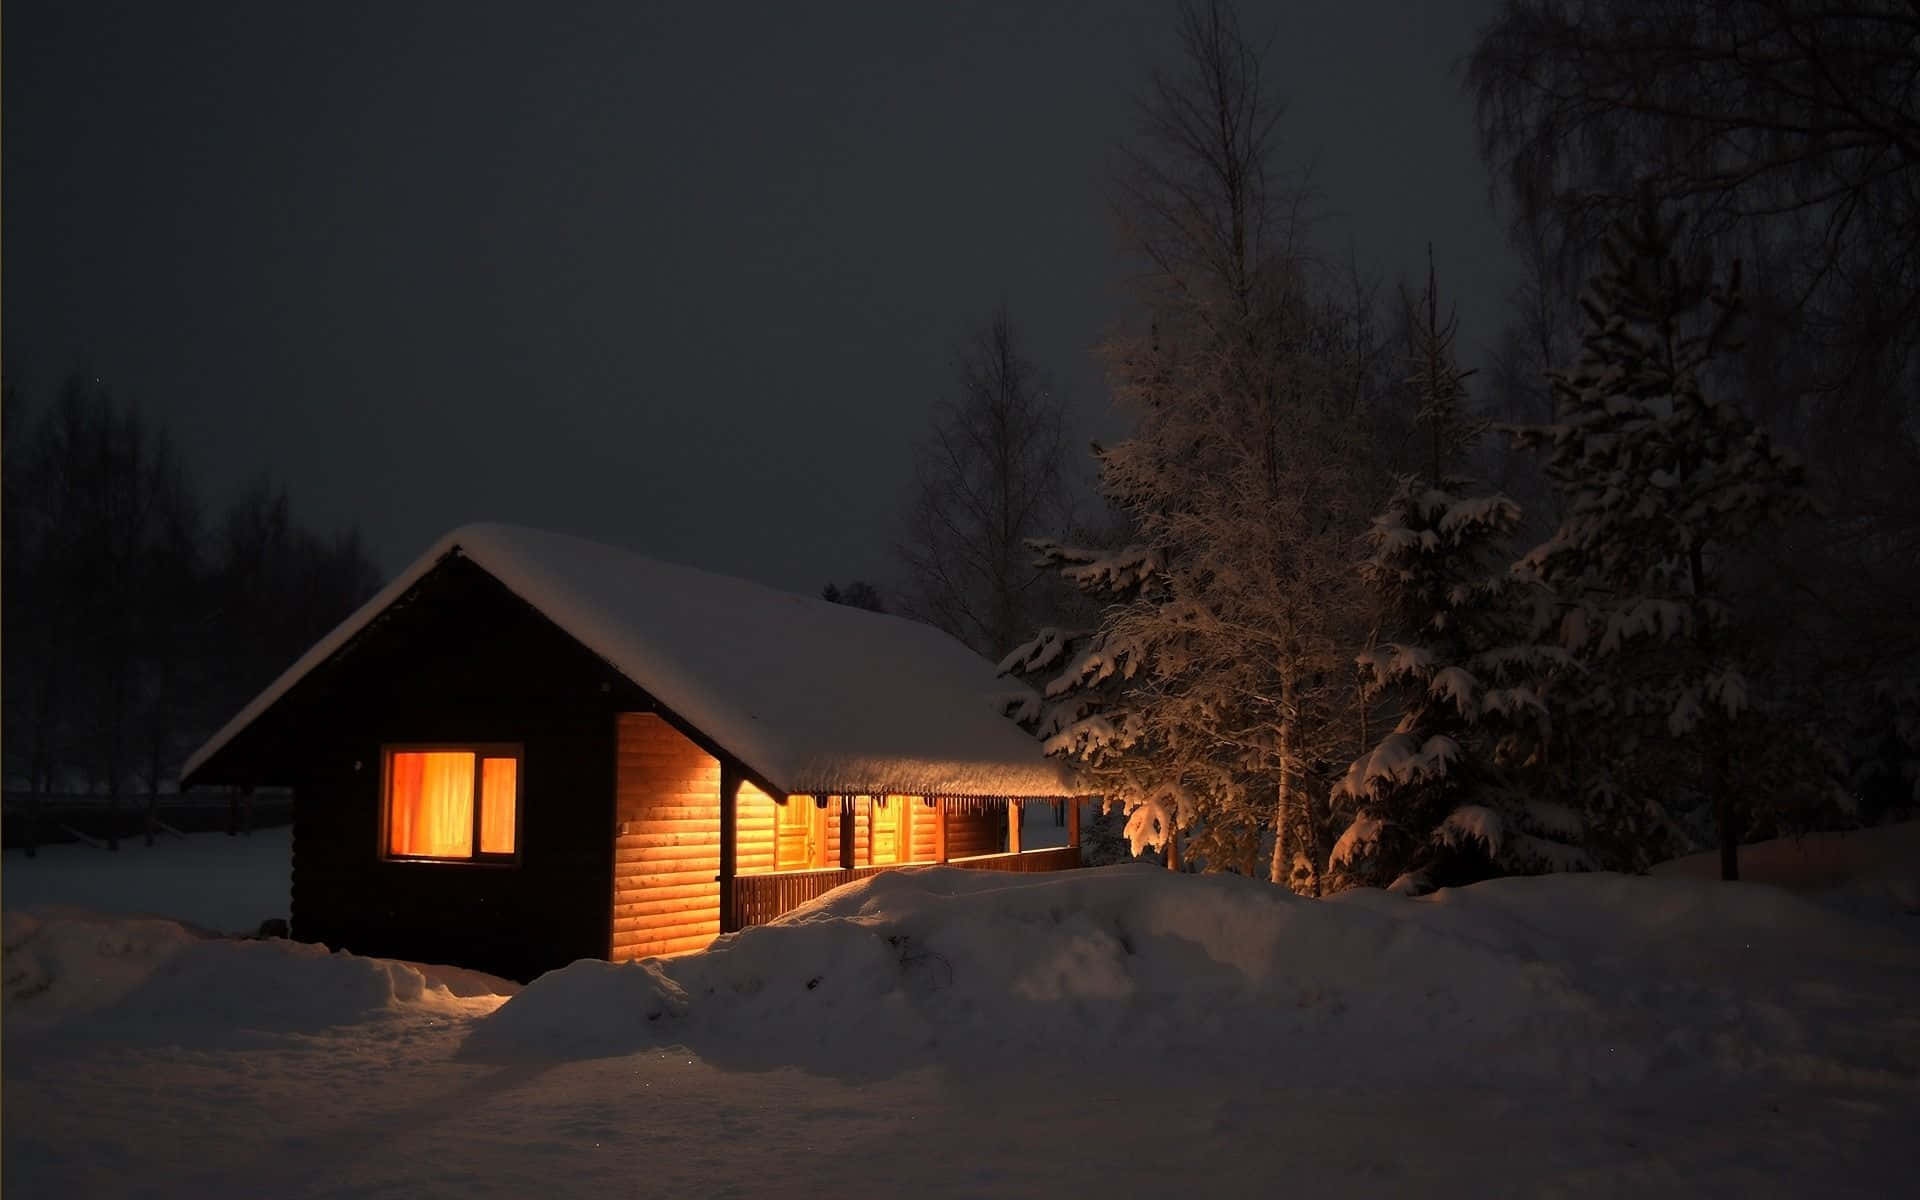 Unapequeña Cabaña Iluminada Por La Noche En La Nieve Fondo de pantalla